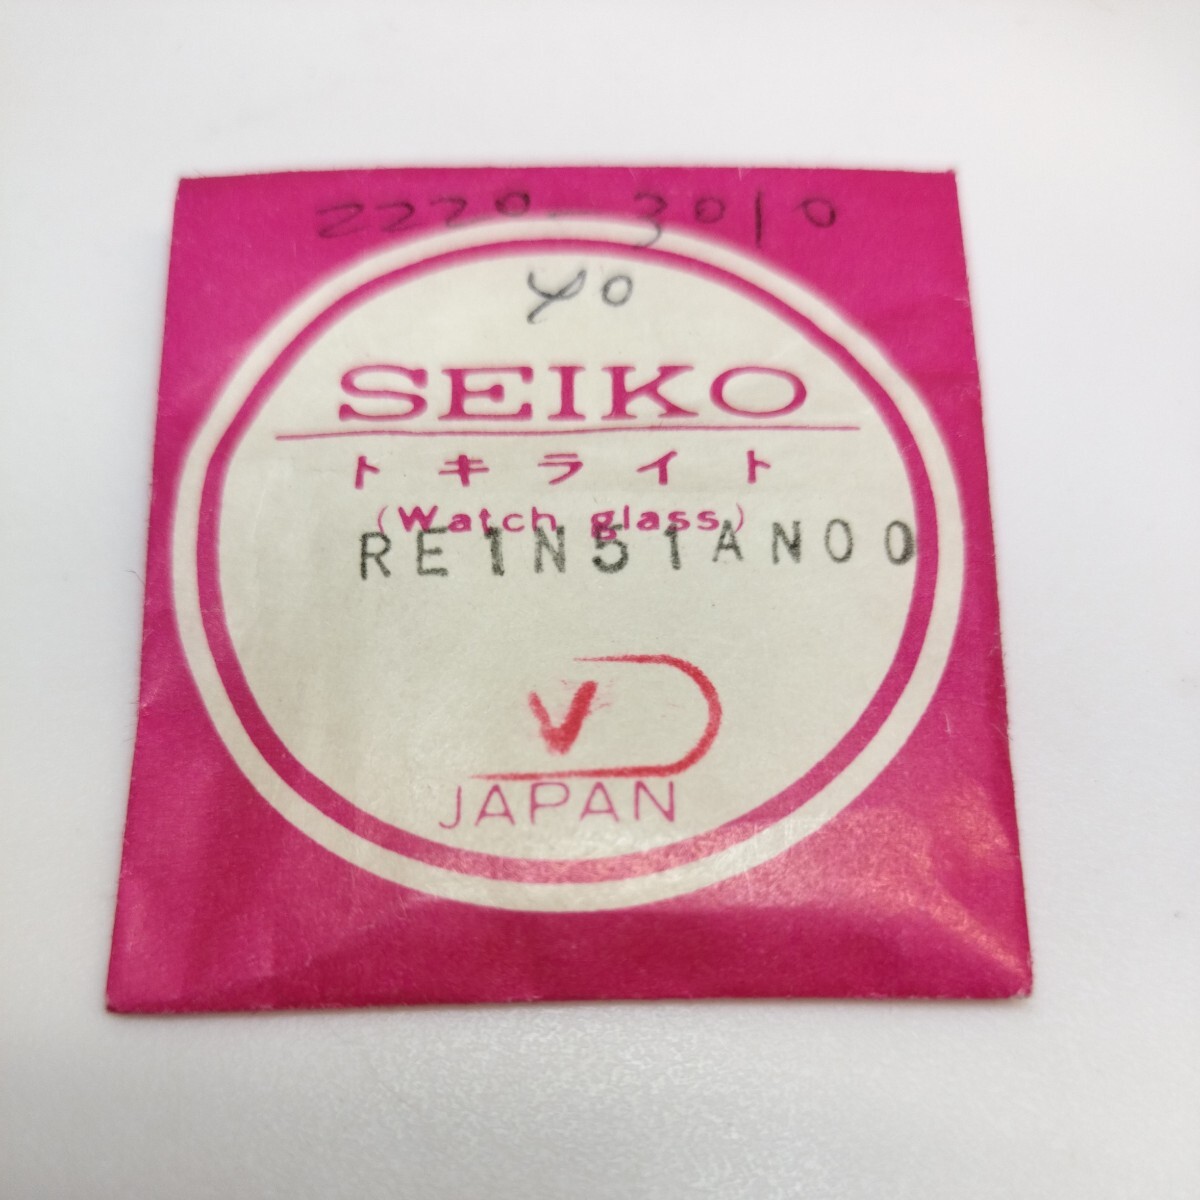 [未使用] 25.9mm 24.35mm 異型 プラスチック 風防 箱型 SP25 001 セイコー SEIKO RE1N51ANOO C型_画像4